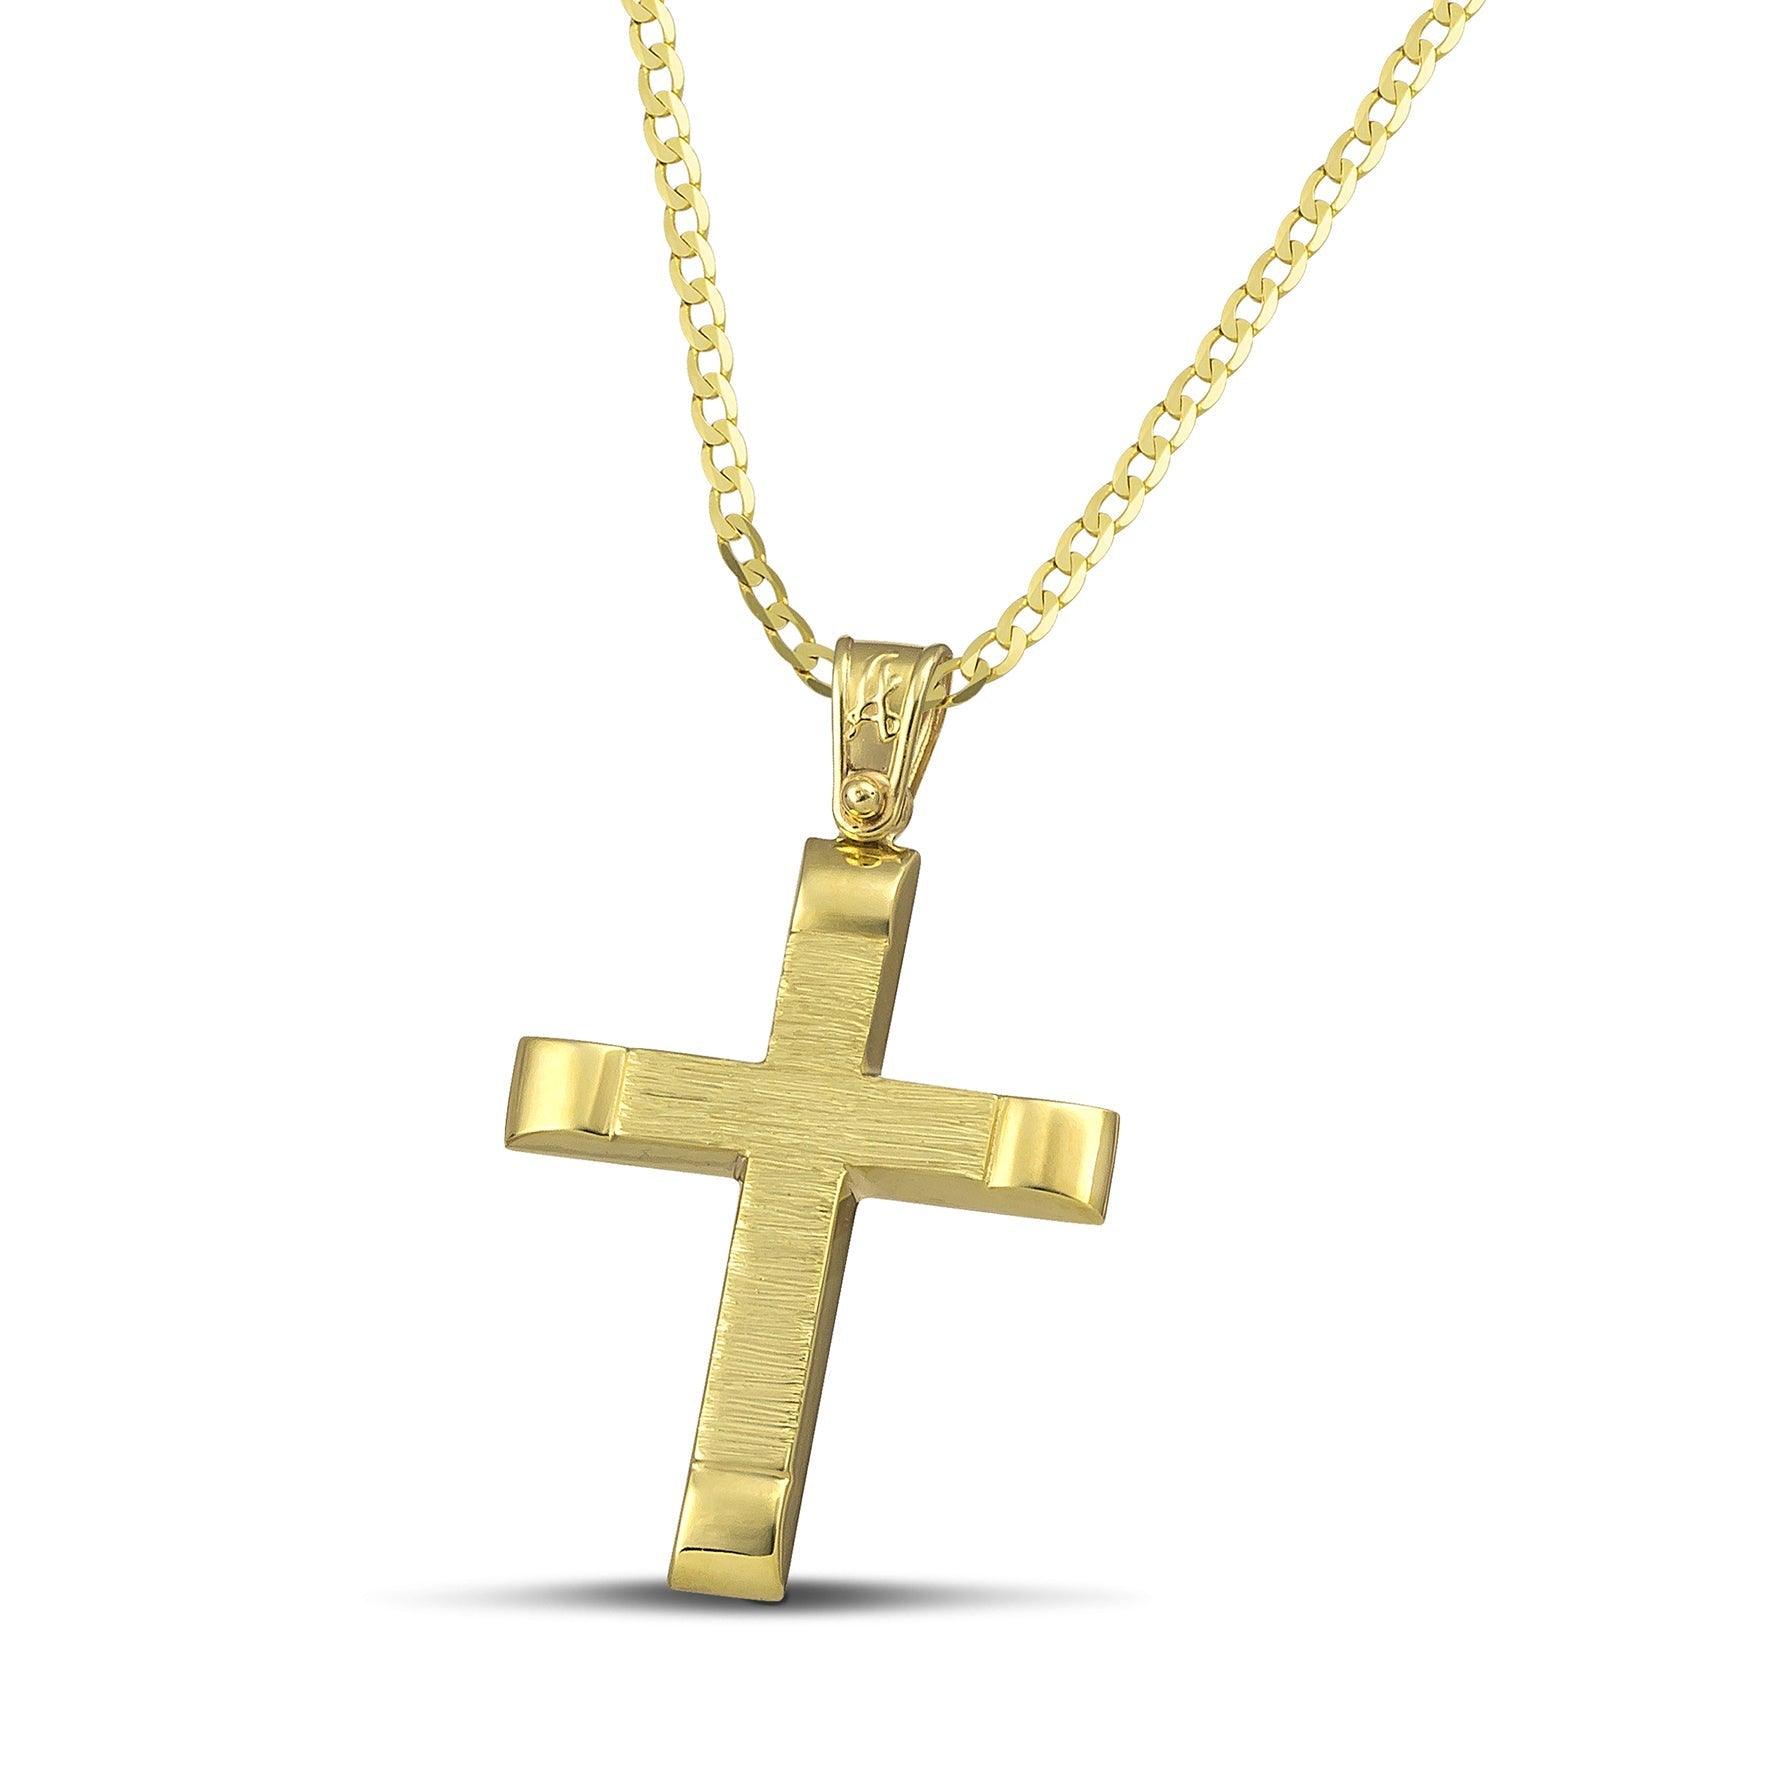 Αντρικός χρυσός βαφτιστικός σταυρός Κ14, σαγρέ με λουστράτες άκρες και κλασσική αλυσίδα.